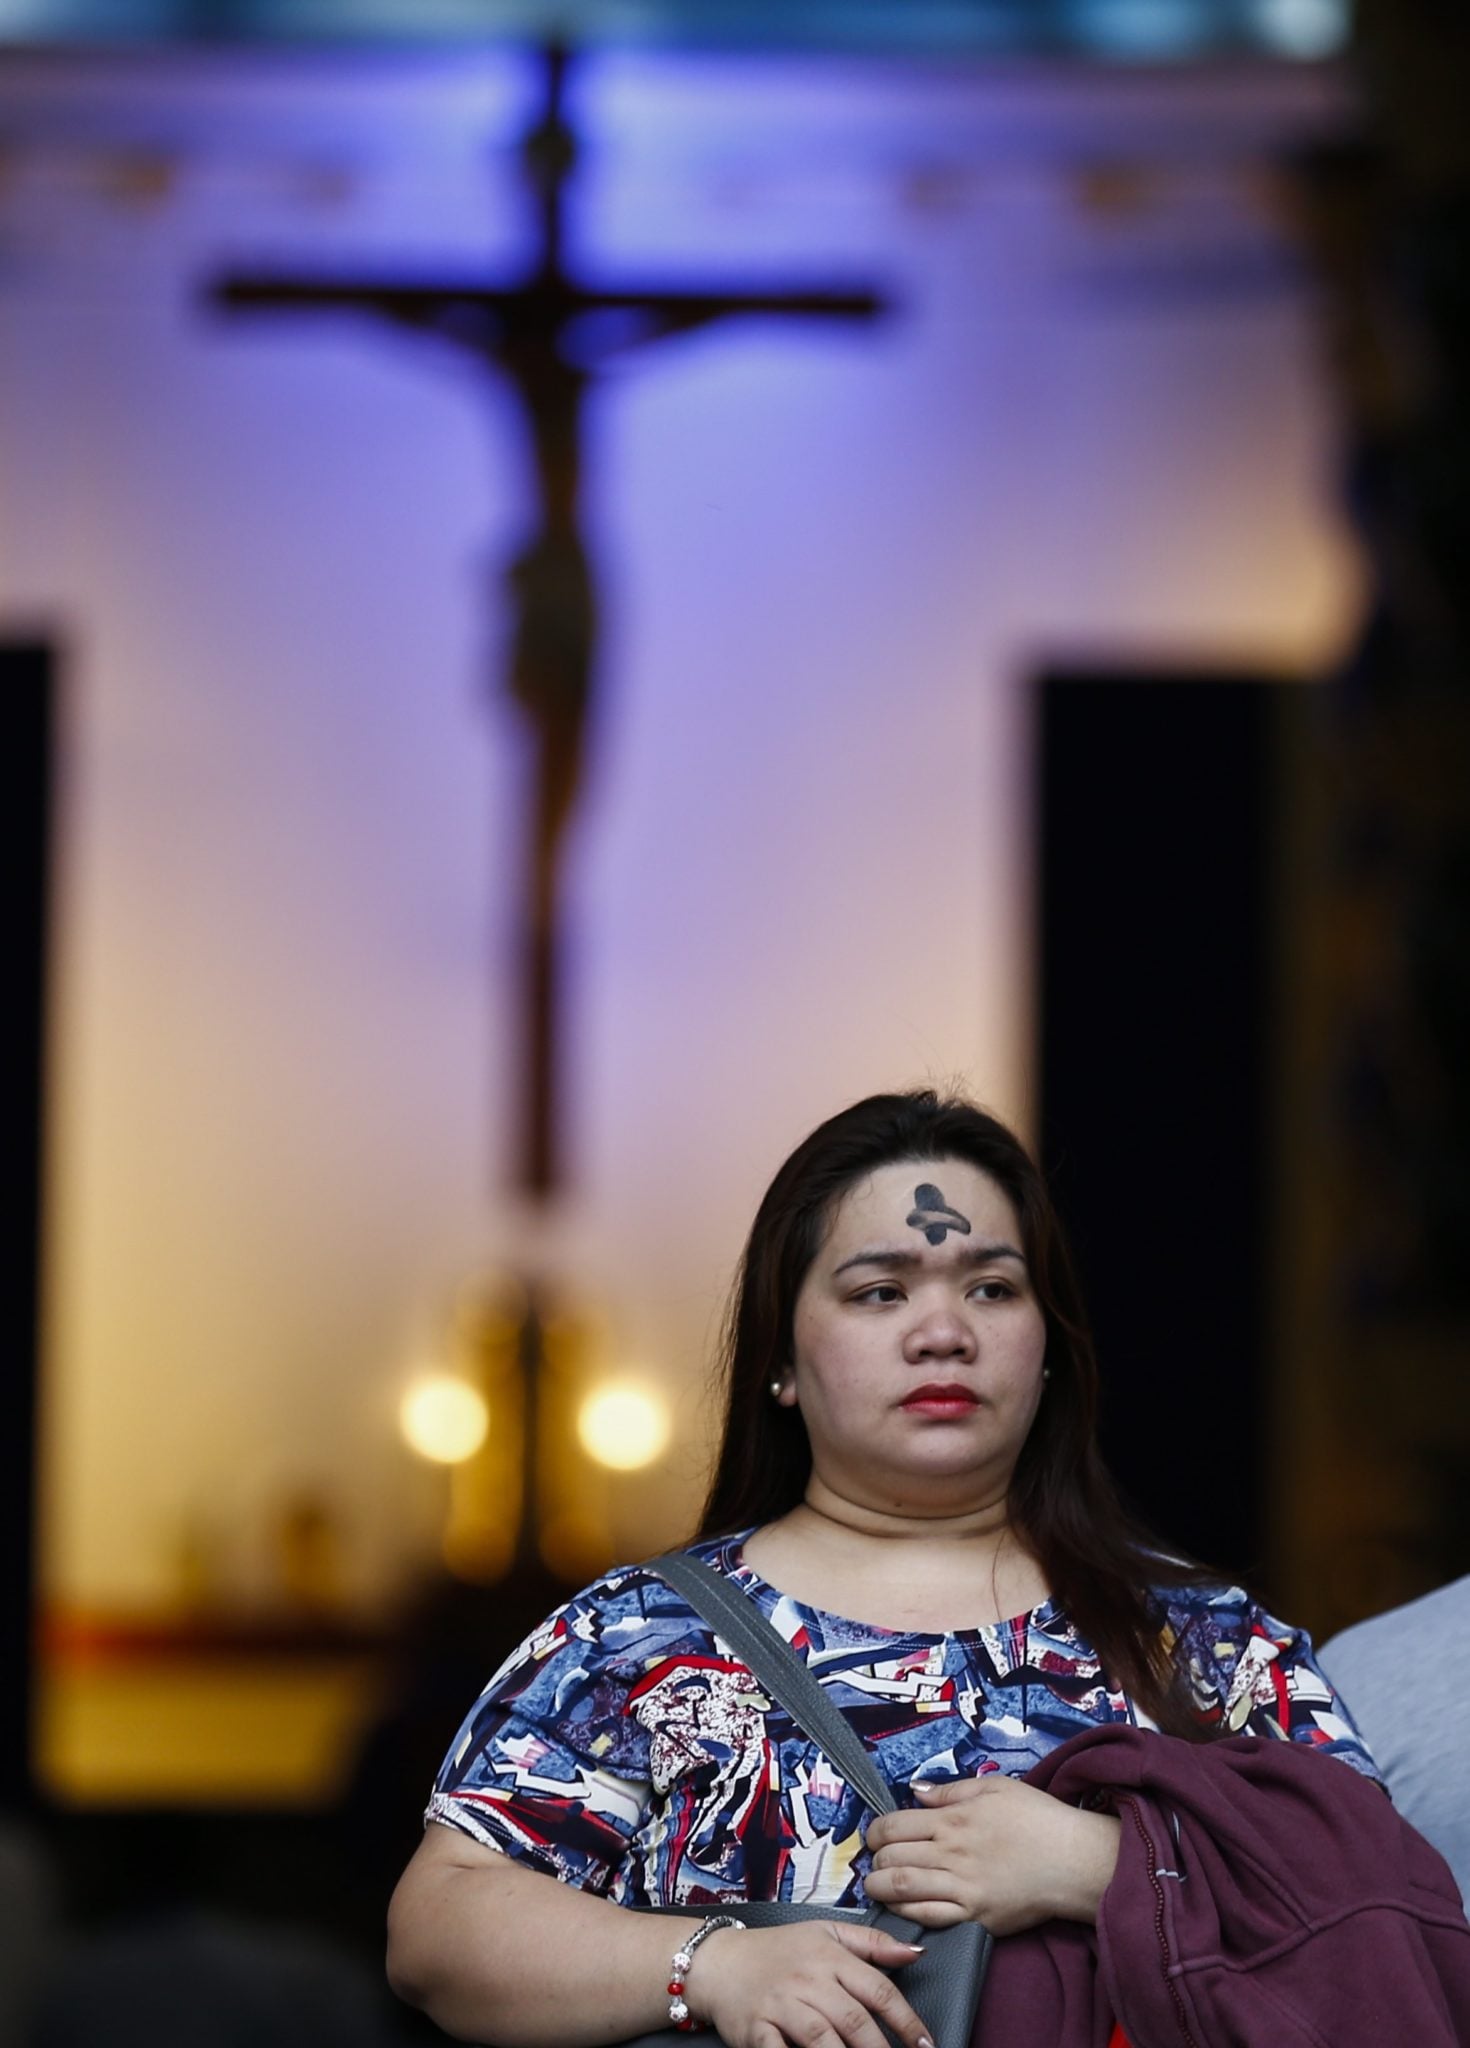 Filipiny, Quezon City: Kobieta z oznakowaniem z popiołu na czole po Mszy świętej w kościele świętego Piotra, fot: Rolex Dela Pena, PAP/EPA 